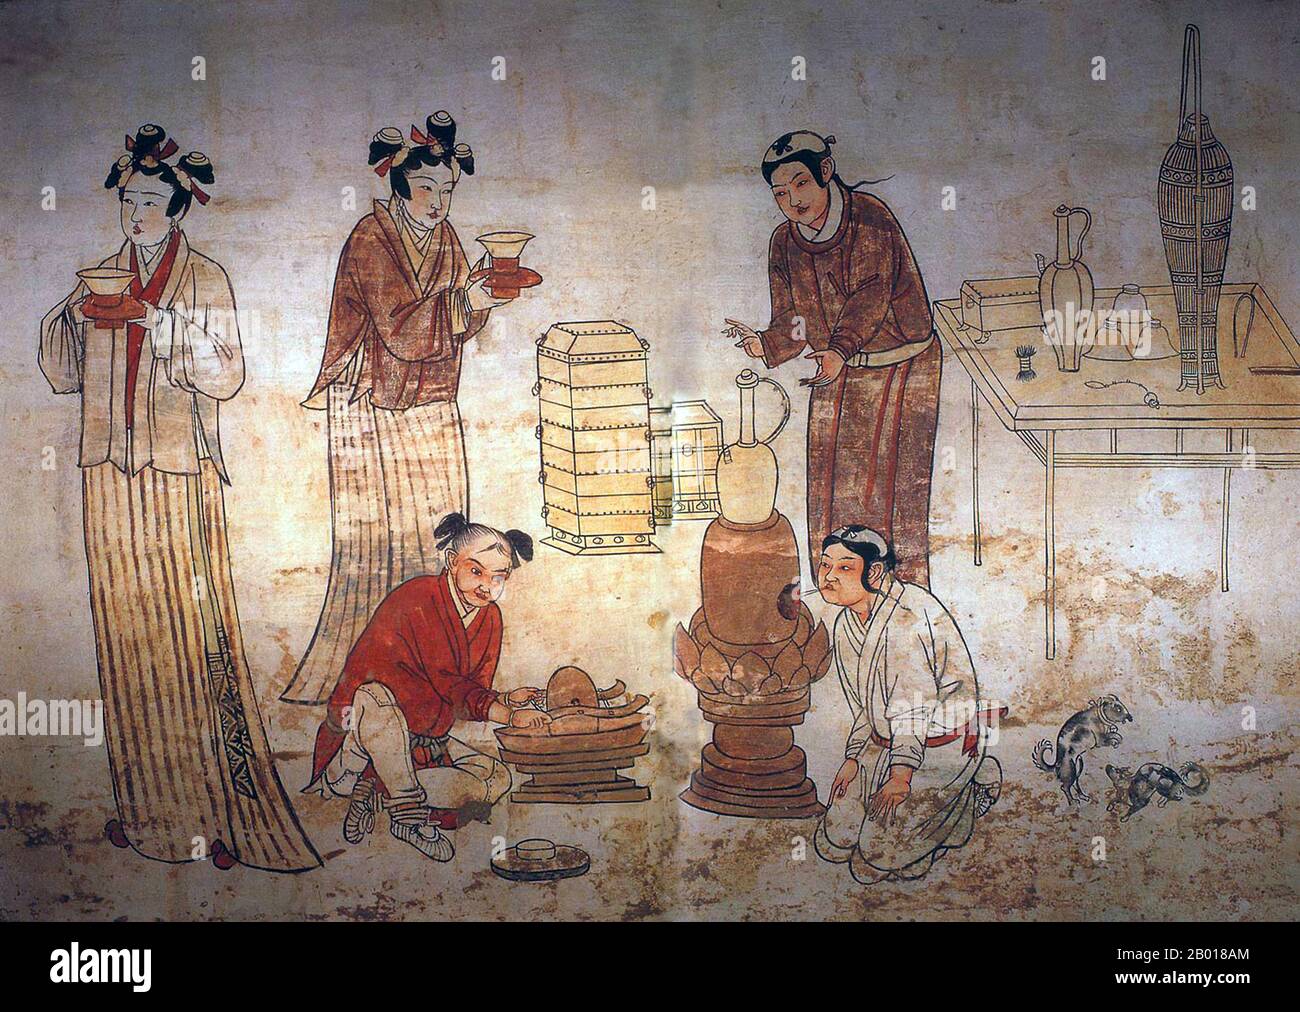 Cina: Un gruppo di persone che preparano il tè. Murale nella tomba di Zhang Kuangzheng, Xuanhua, Hebei, Dinastia Liao (1093-1117). La dinastia di Liao, conosciuta anche come l'Impero Khitan, era uno stato che dominava le regioni di Manciuria, Mongolia, e parti della Cina settentrionale propriamente detta. Fu fondata dal clan Yelü del popolo Khitano nello stesso anno in cui la dinastia Tang crollò (907), anche se il suo primo sovrano, Yelü Abaoji (Yaruud Ambagai Khan), non dichiarò un nome di epoca fino al 916. Foto Stock